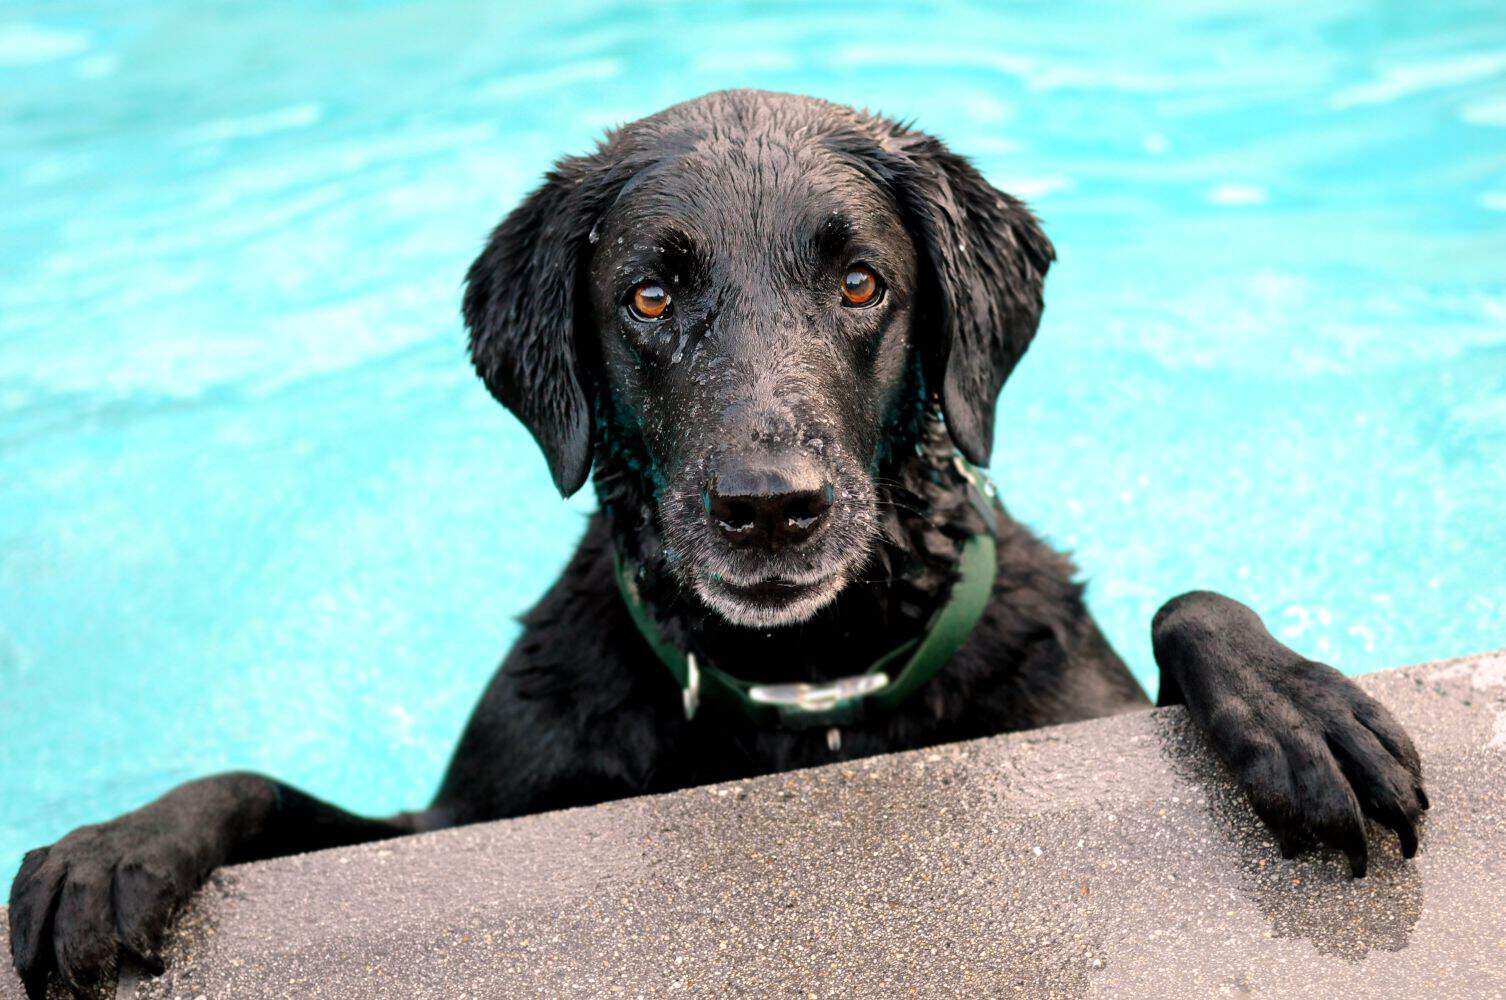 A black dog in a pool.